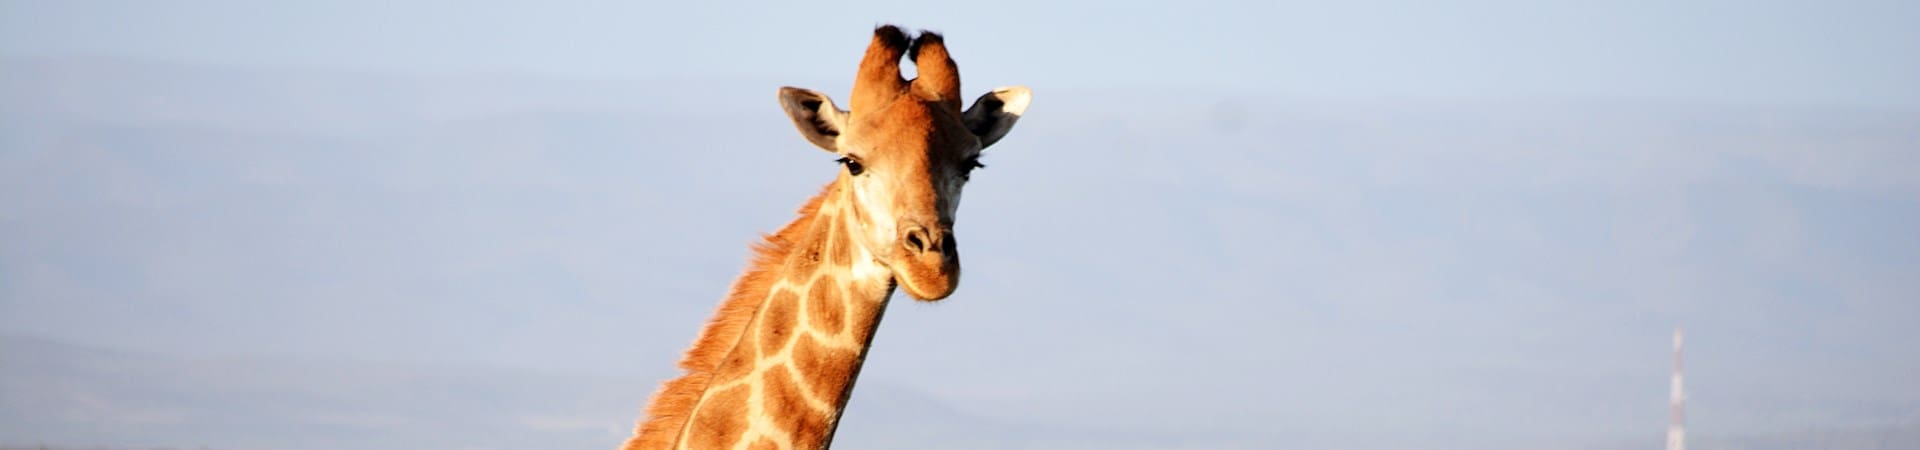 Giraffe at Kududu Game Reserve